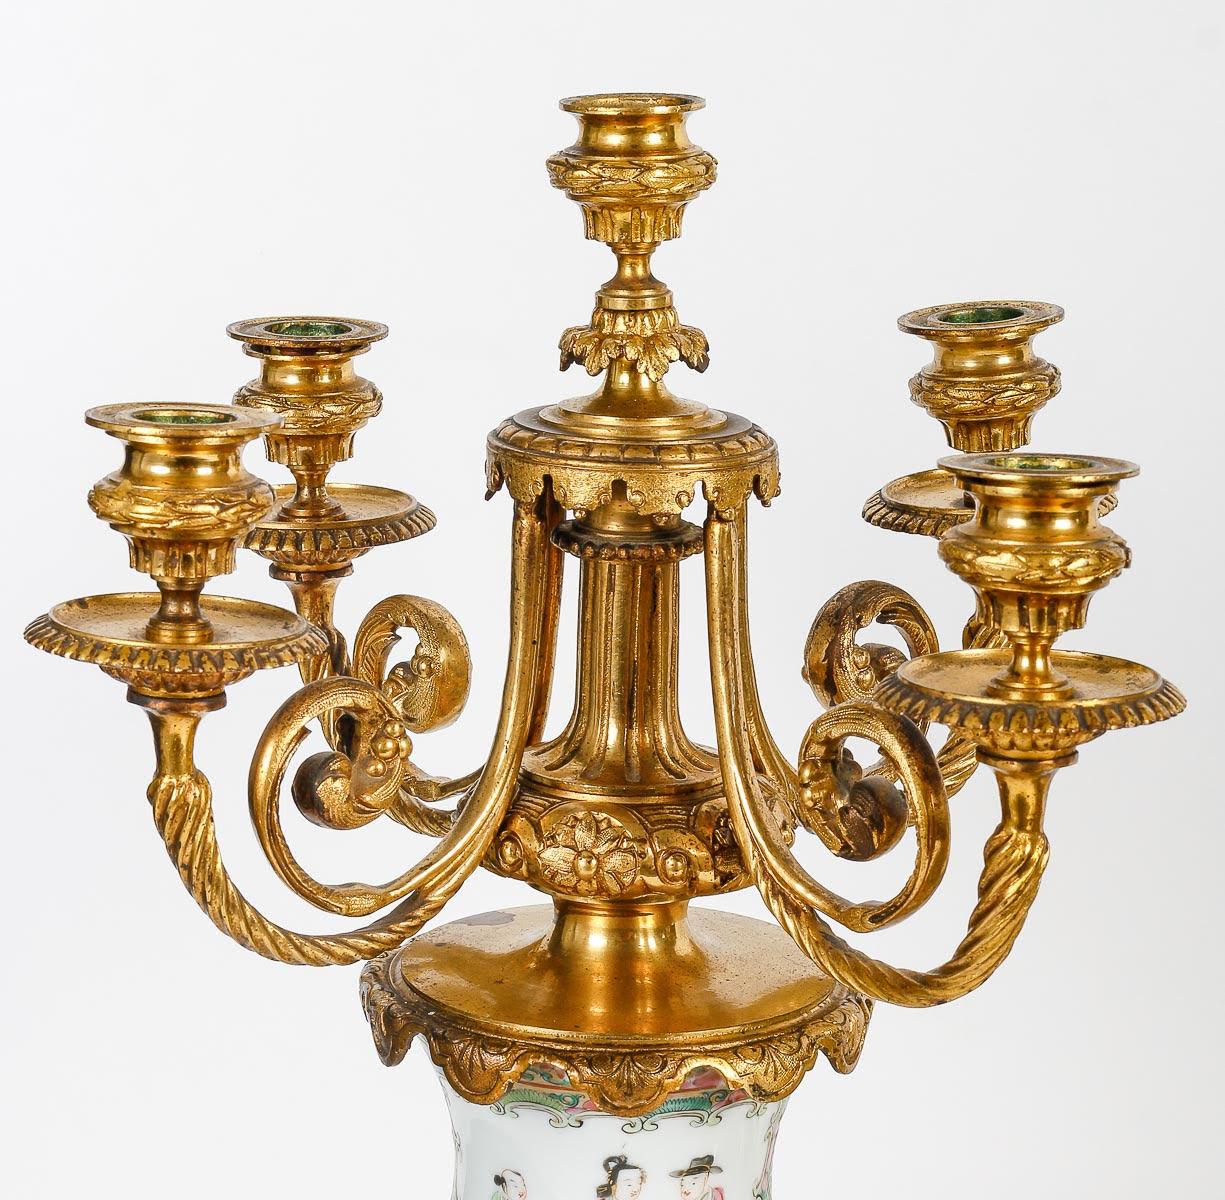 Gilt Bronze and Canton Porcelain Mantel Set, China.

An important gilt bronze and Canton porcelain mantel set, Napoleon III period, 19th century, China.
Candelabra: h: 54.5cm, d: 26cm
Bowl: h: 31cm, w: 48cm, d: 26cm